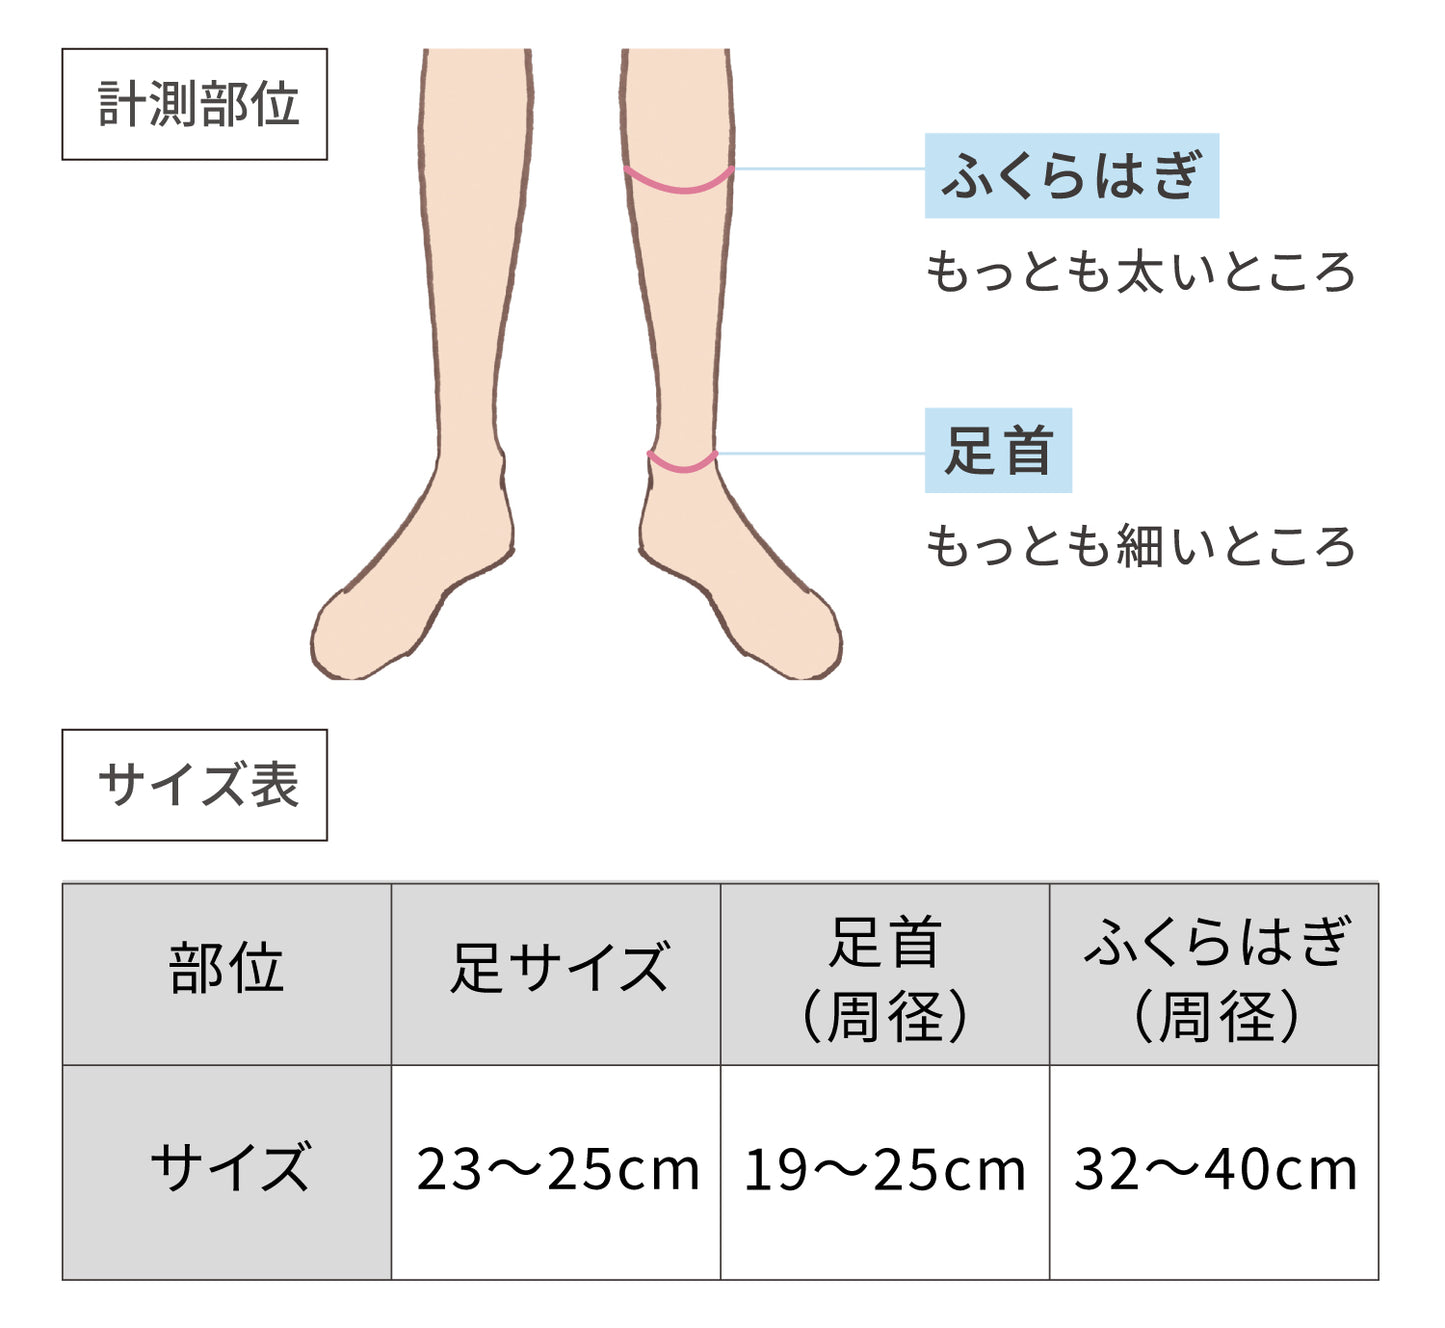 サイズ表、足：23から25センチメートル、足首：19から25センチメートル、ふくらはぎ：32から40センチメートル